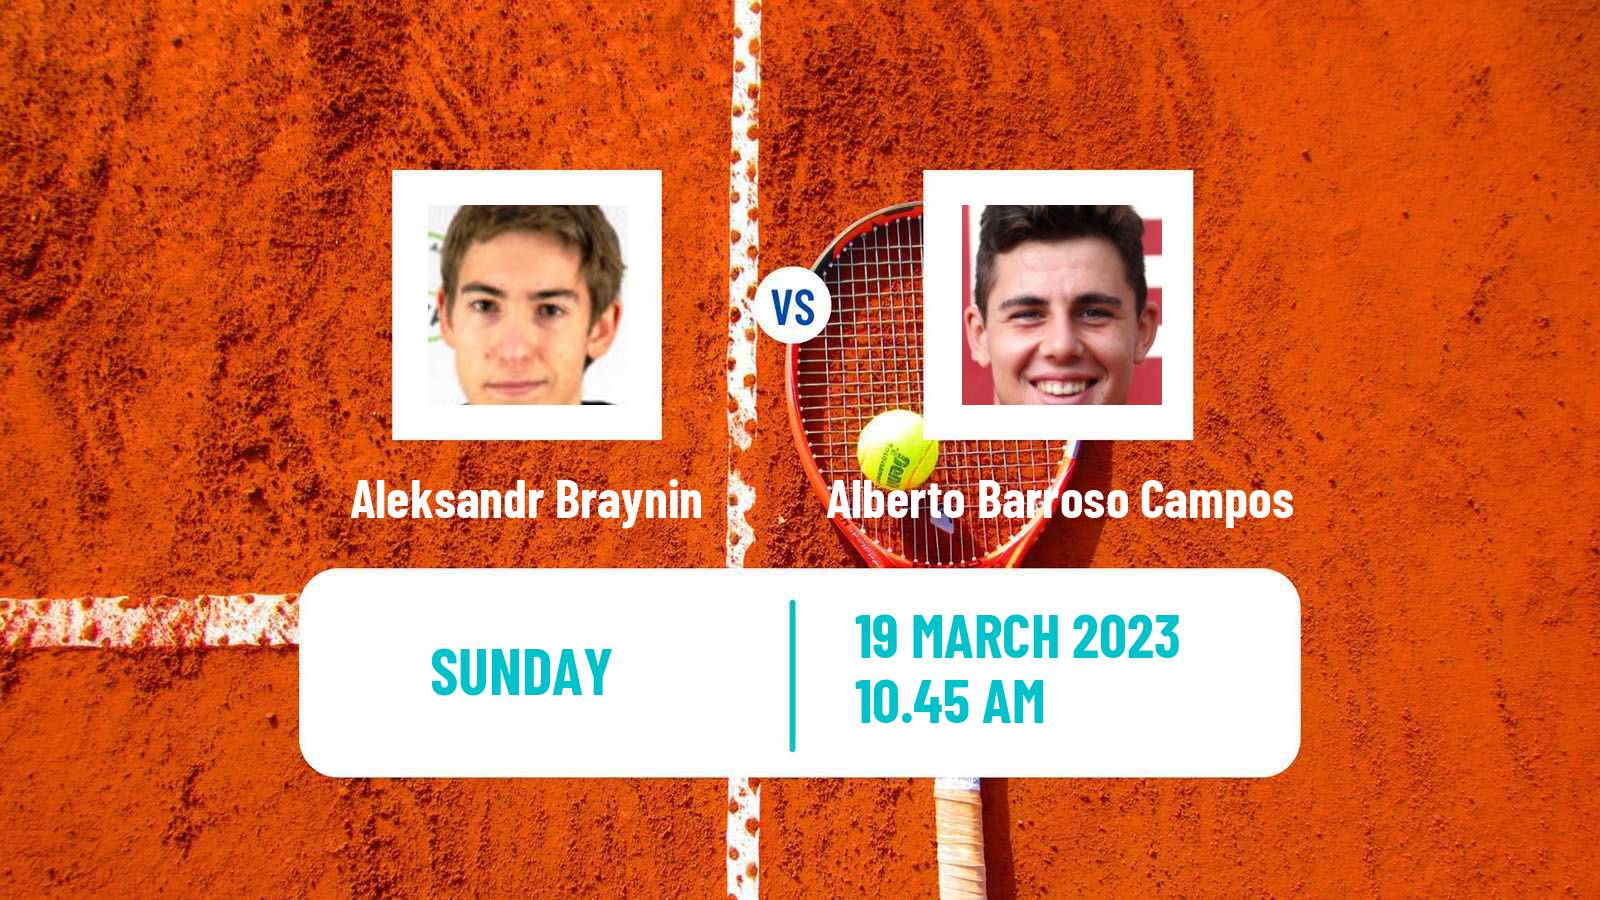 Tennis ATP Challenger Aleksandr Braynin - Alberto Barroso Campos